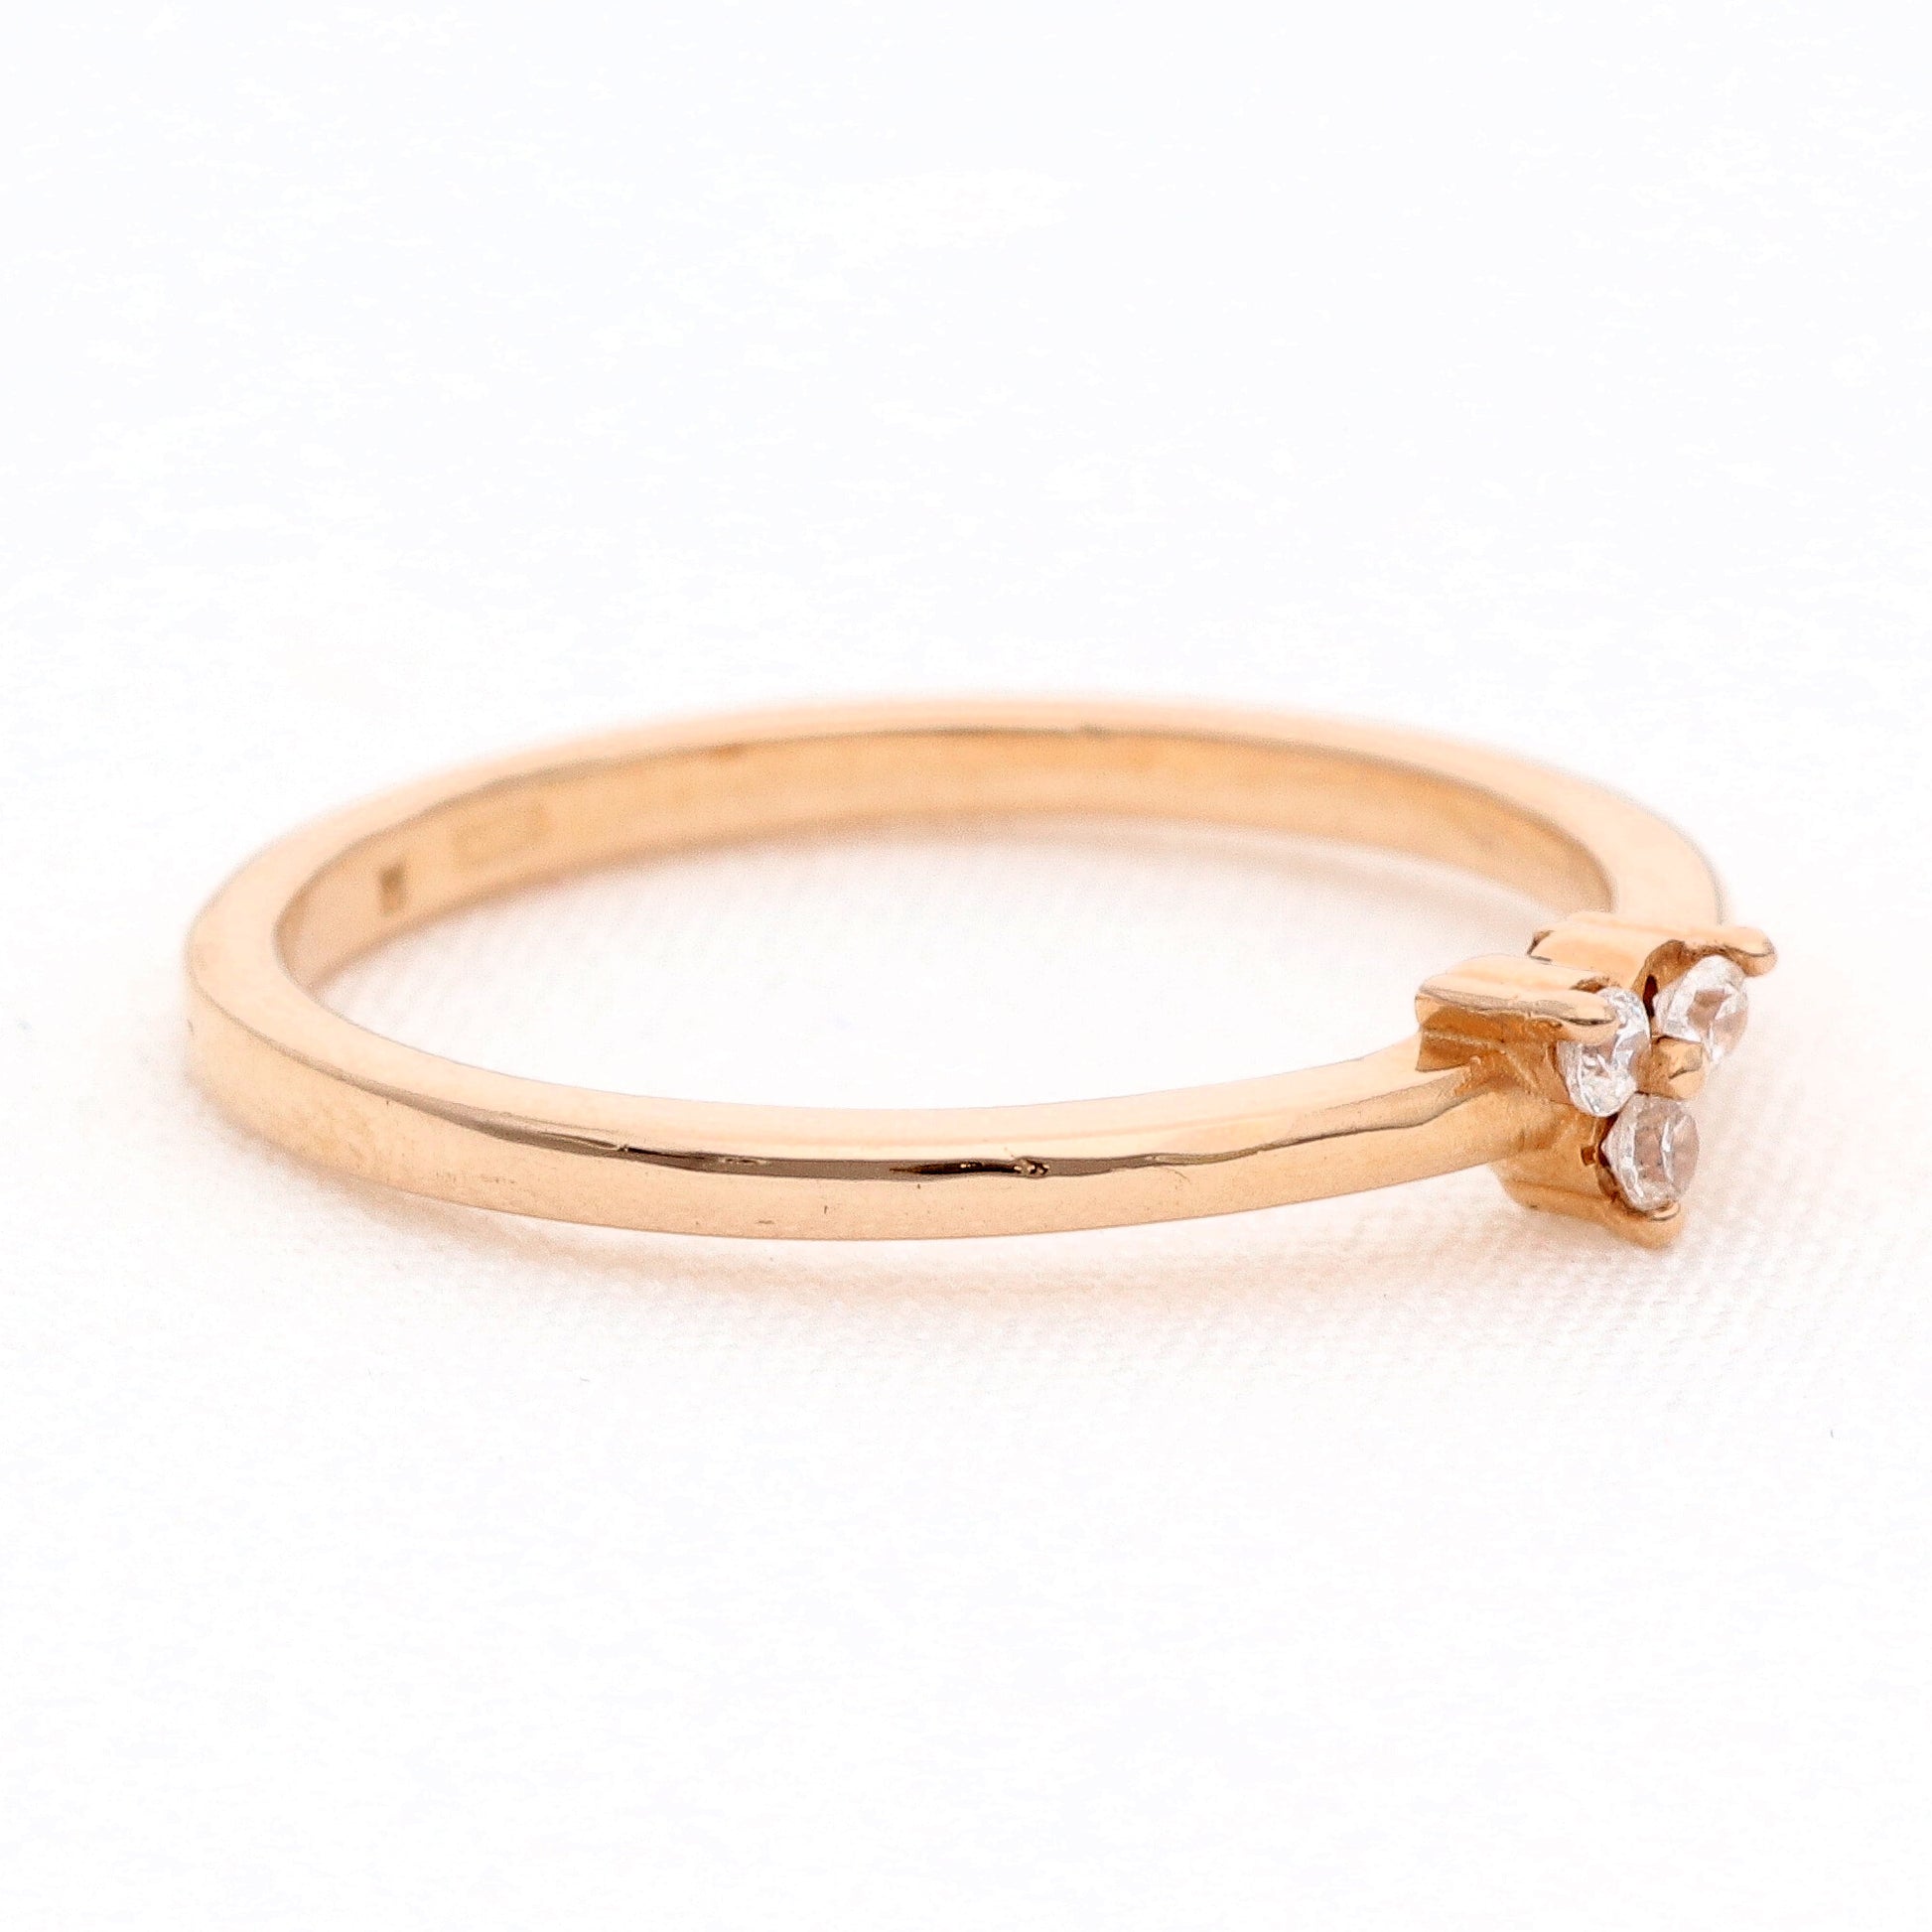 Auksinis žiedas modelis Sėkmės trikampis vestuviniaiziedai.lt